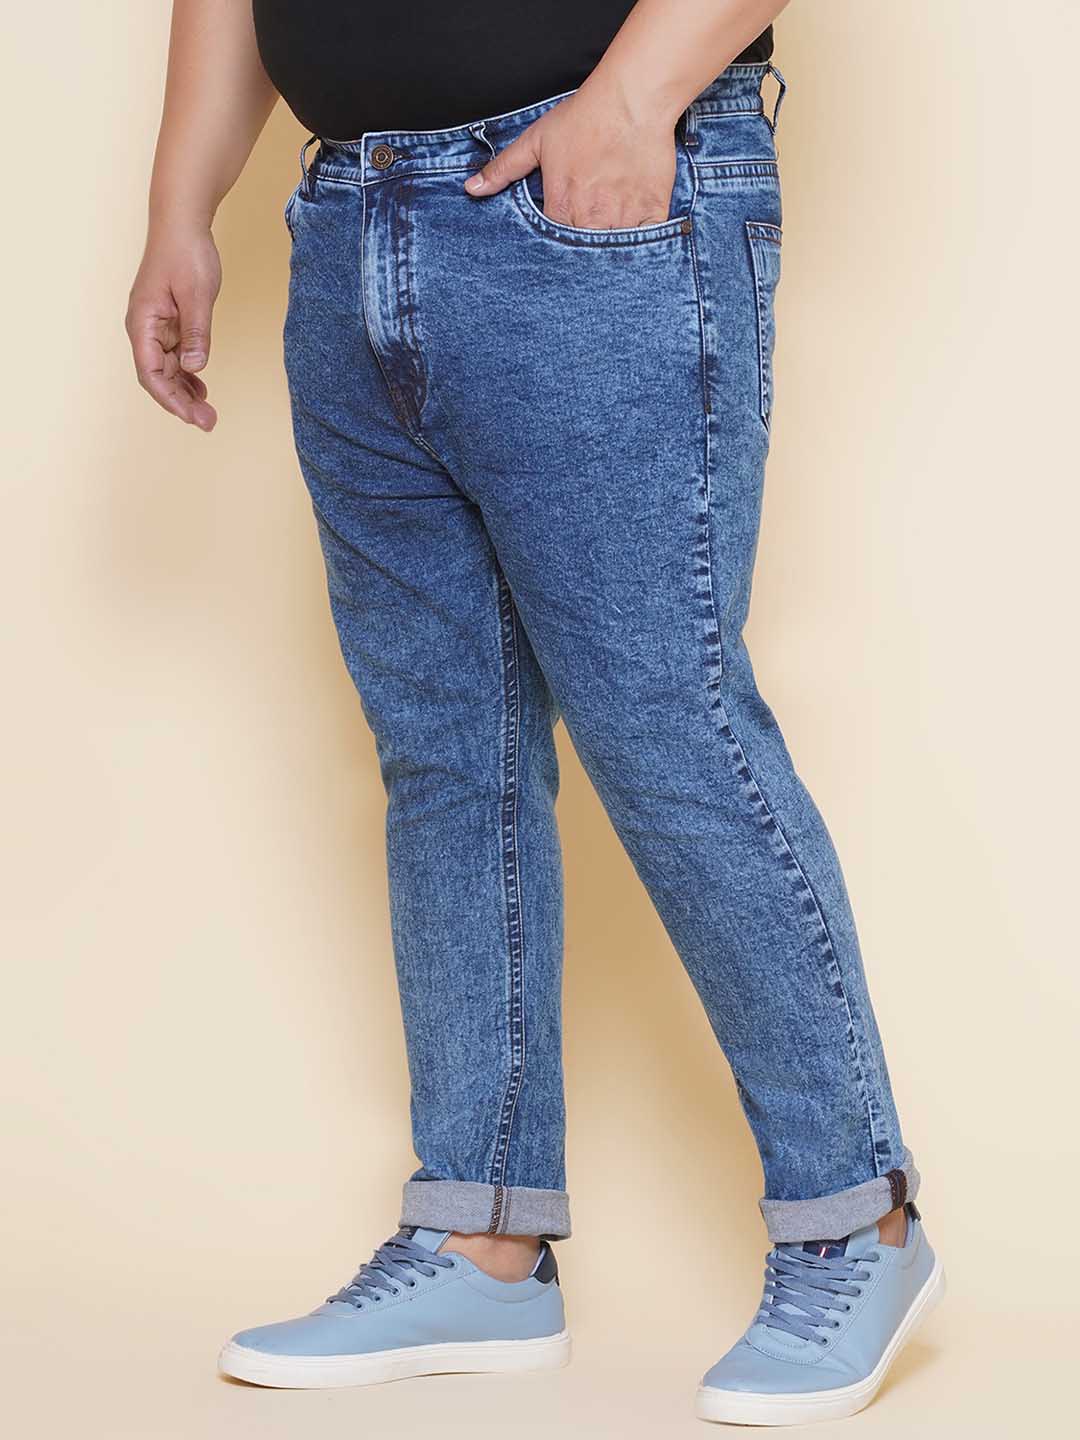 bottomwear/jeans/EJPJ25142/ejpj25142-4.jpg